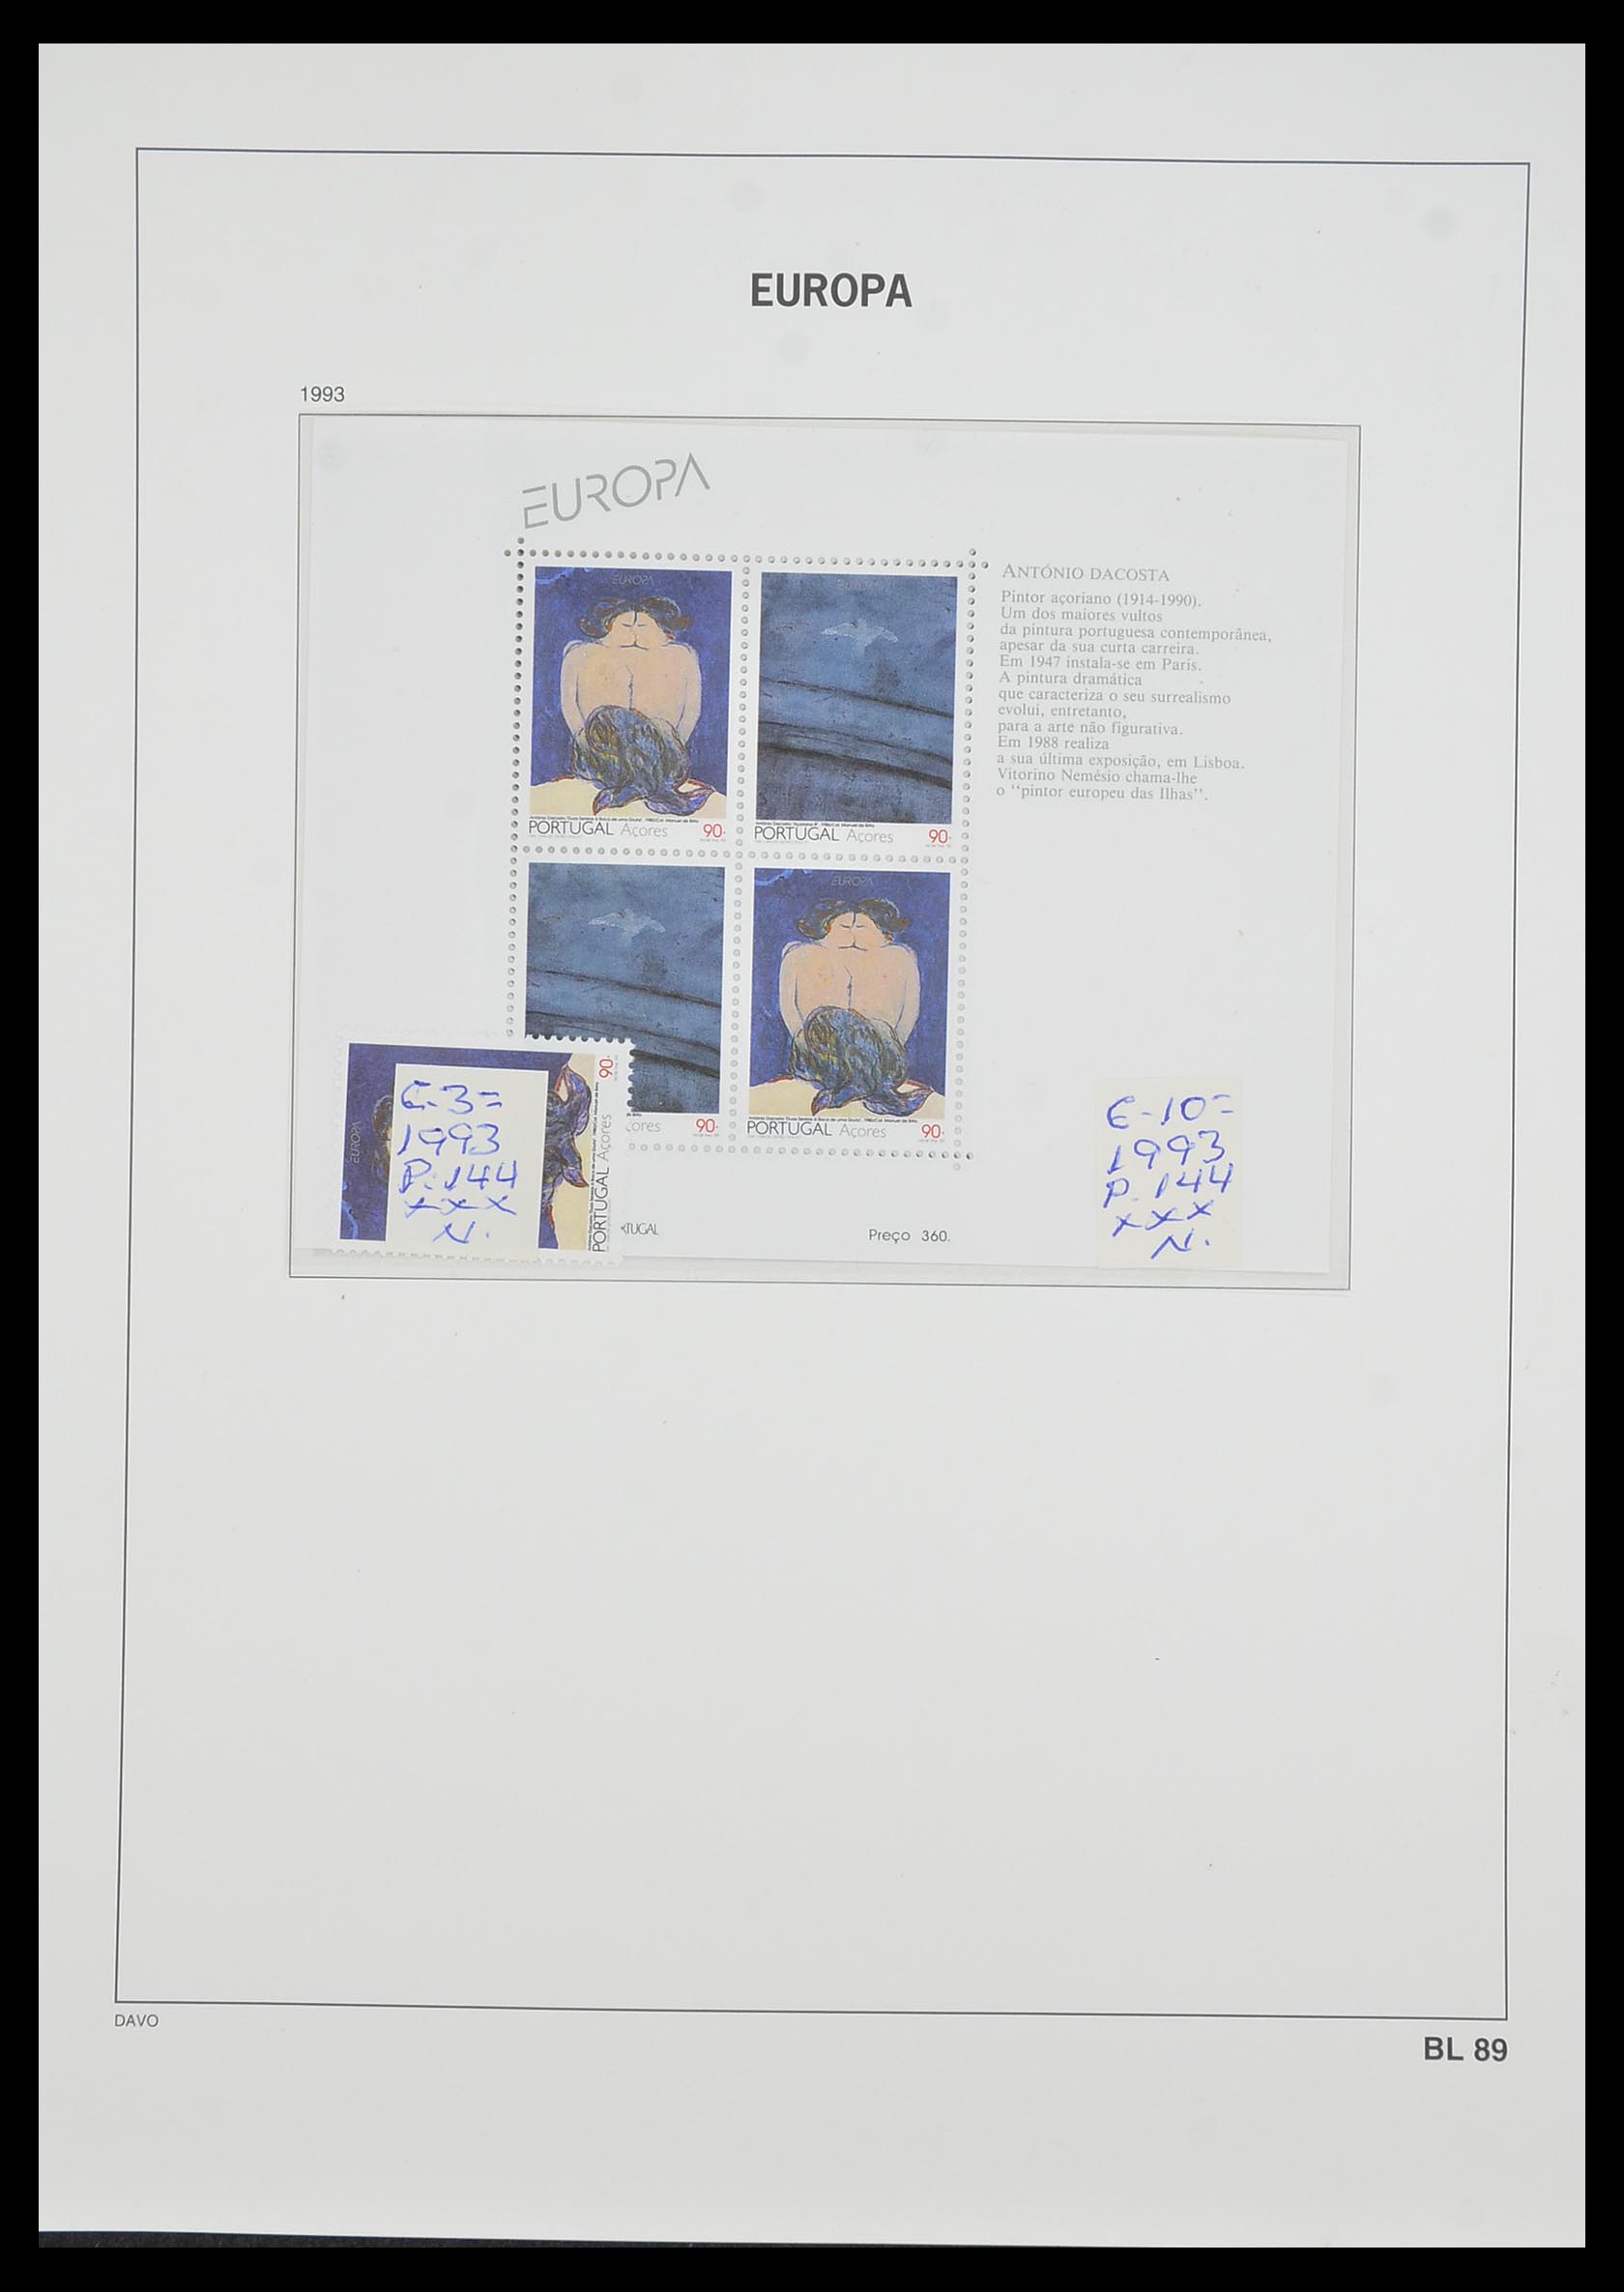 33985 078 - Stamp collection 33985 Europa CEPT souvenir sheets 1974-2014.